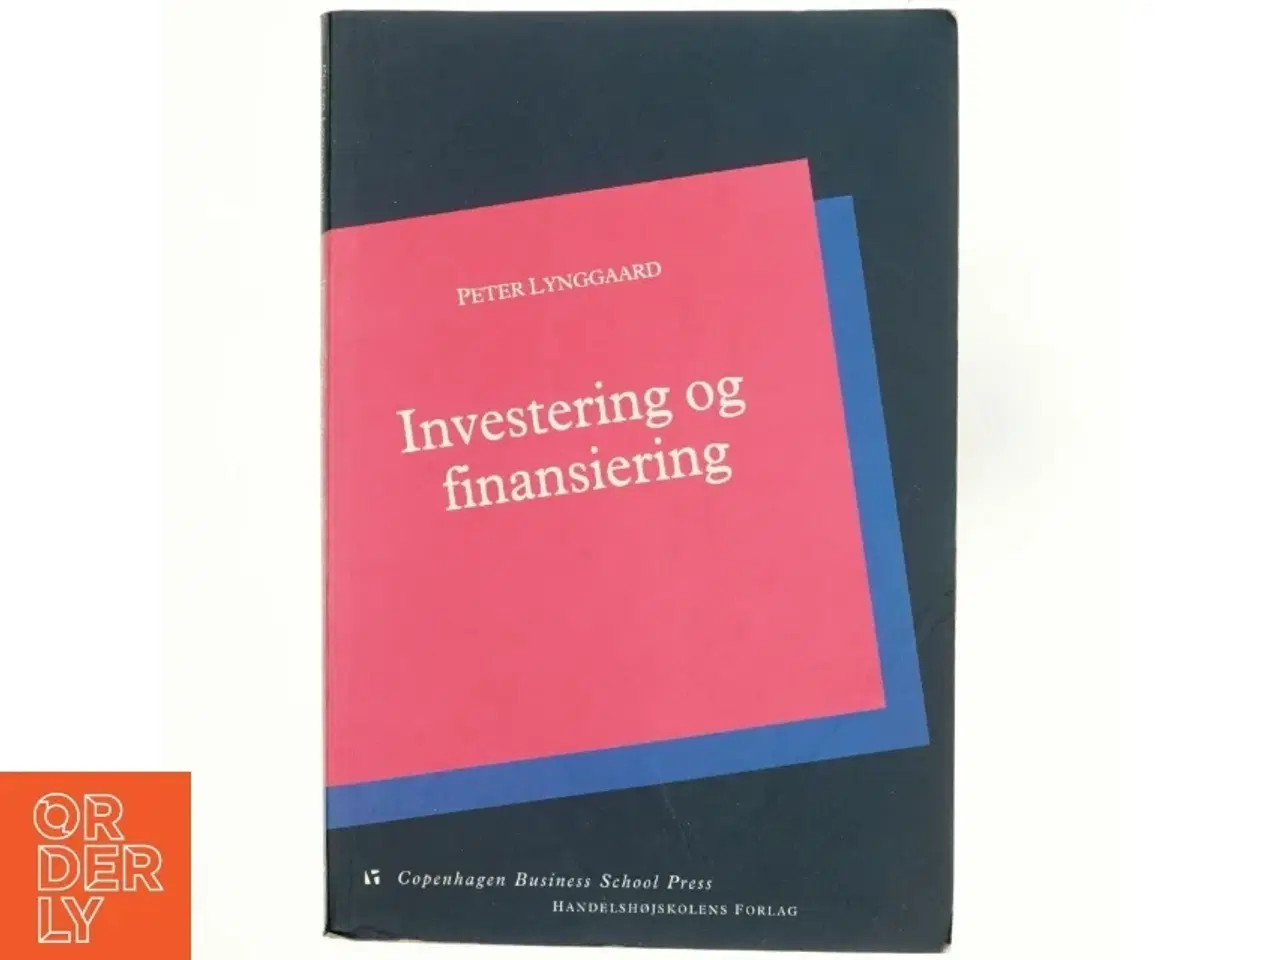 Billede 1 - Investering og finansiering af Peter Lynggaard (Bog)